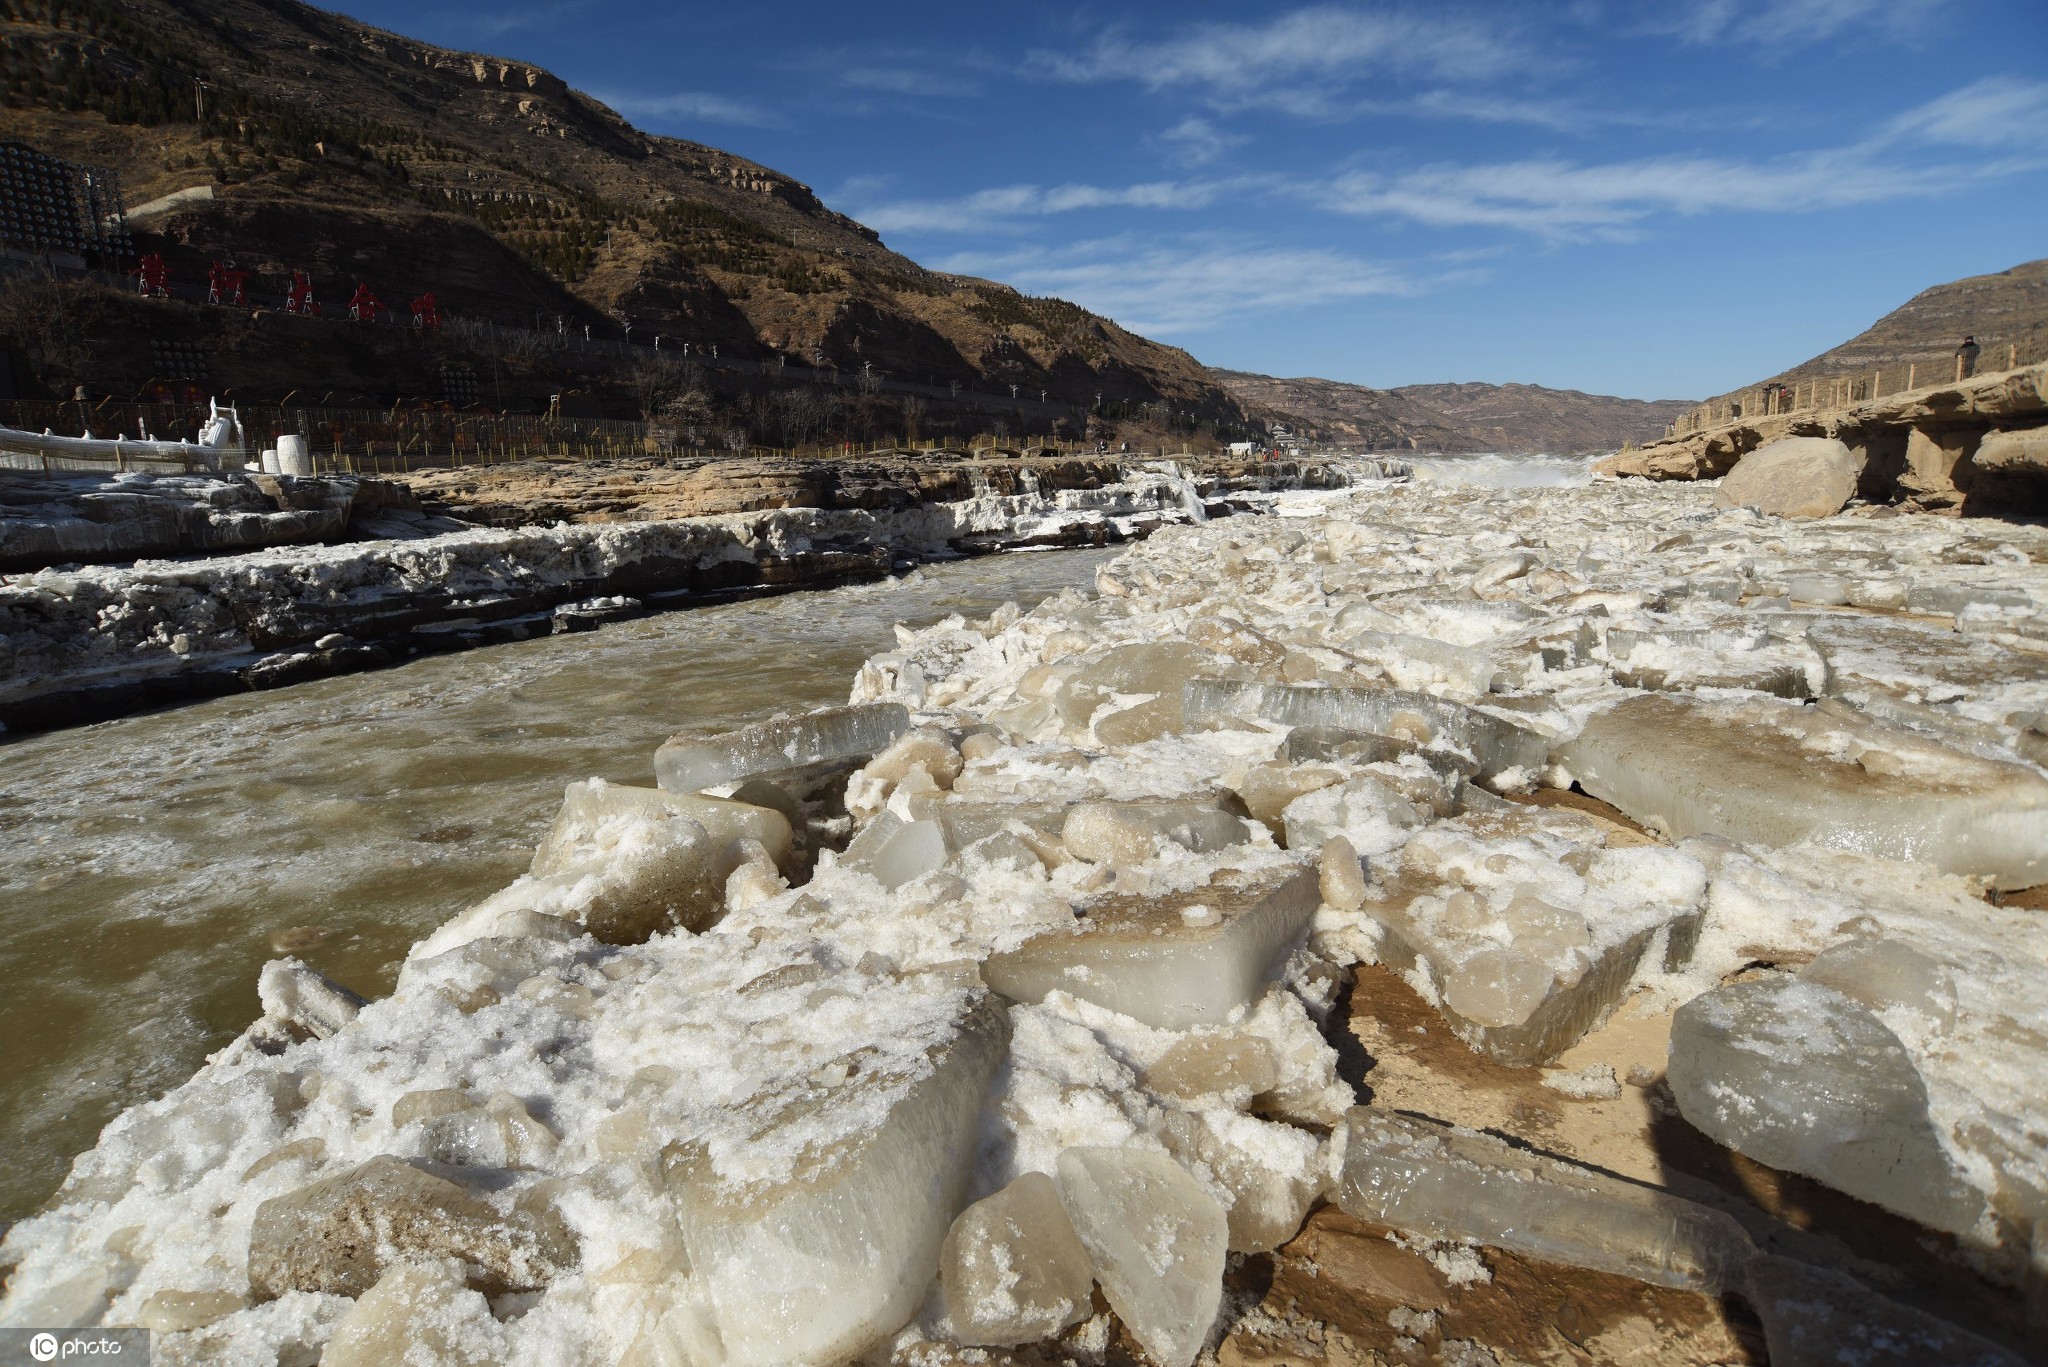 自然风景素材设计冬季的河流全部结冰冰面上覆盖着皑皑的白雪